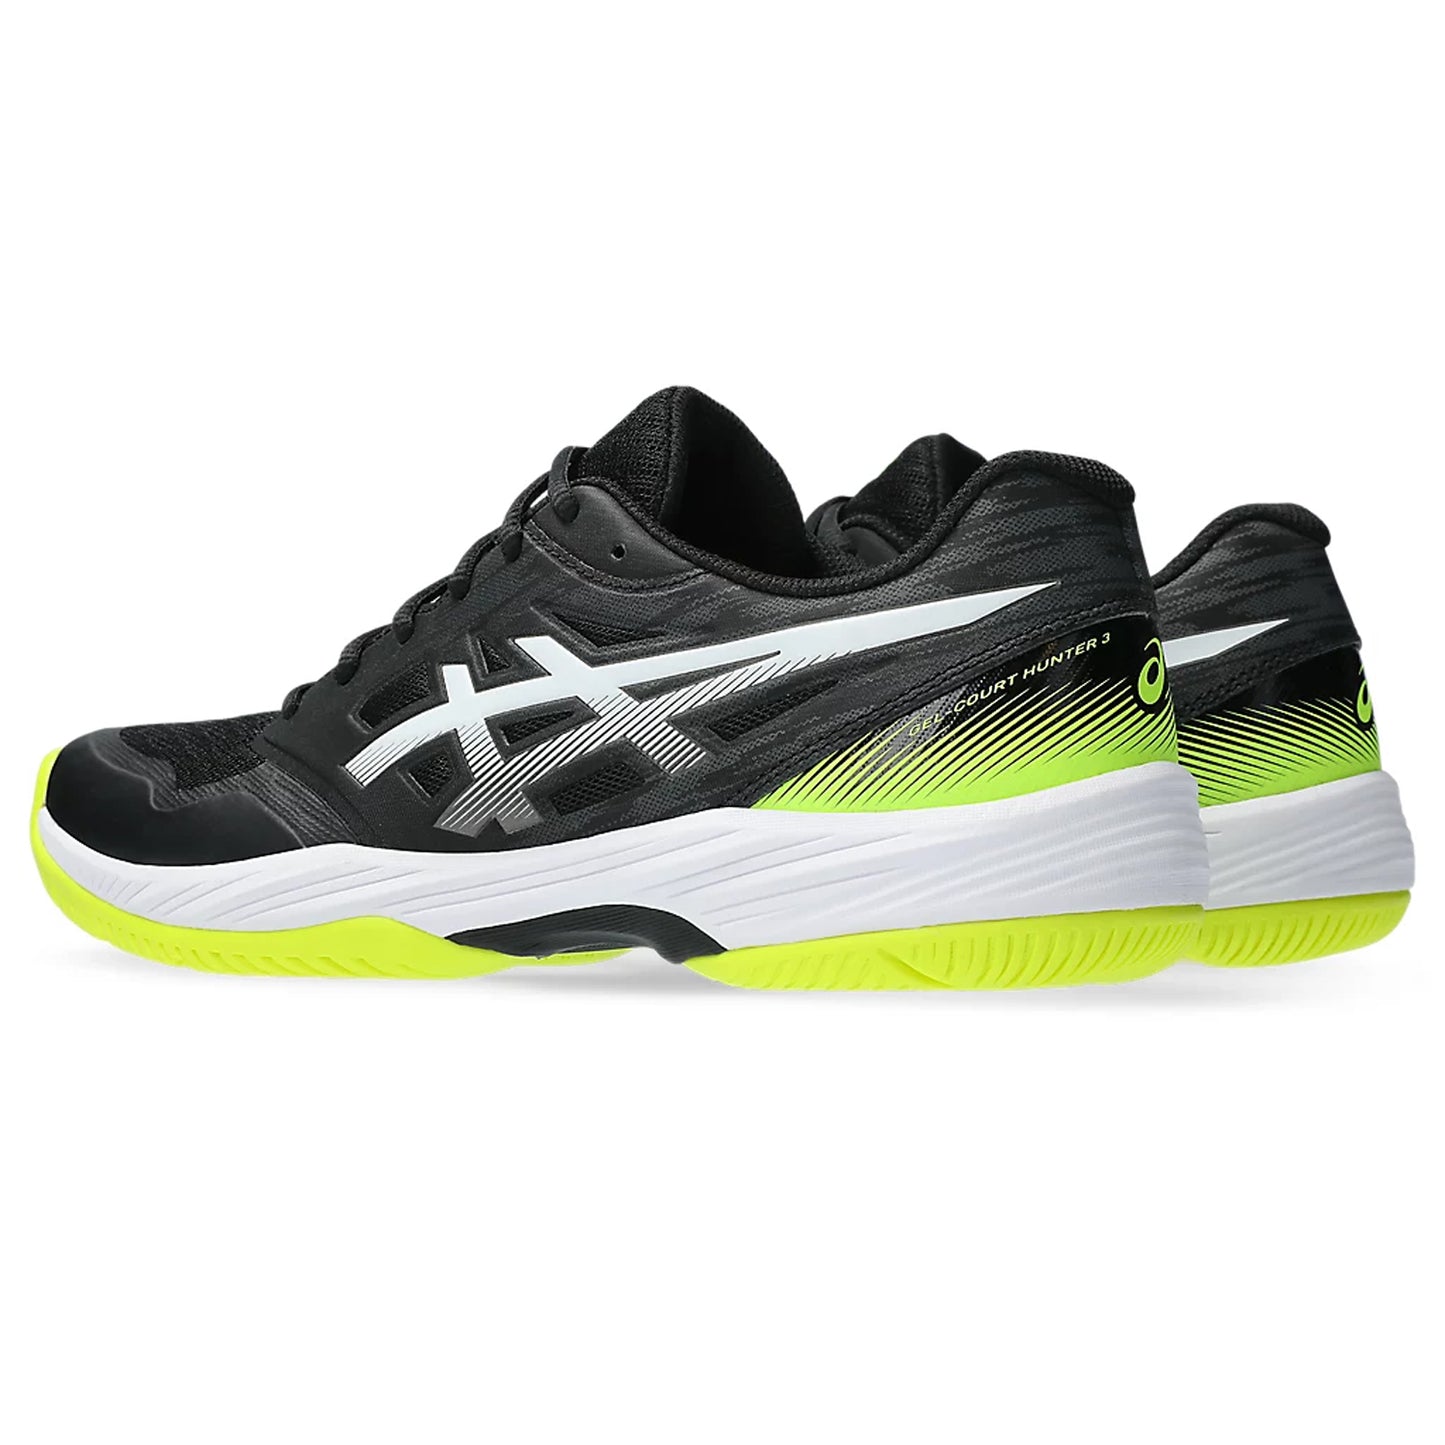 Asics Gel-Court Hunter 3 Indoor Badminton Shoes - Best Price online Prokicksports.com